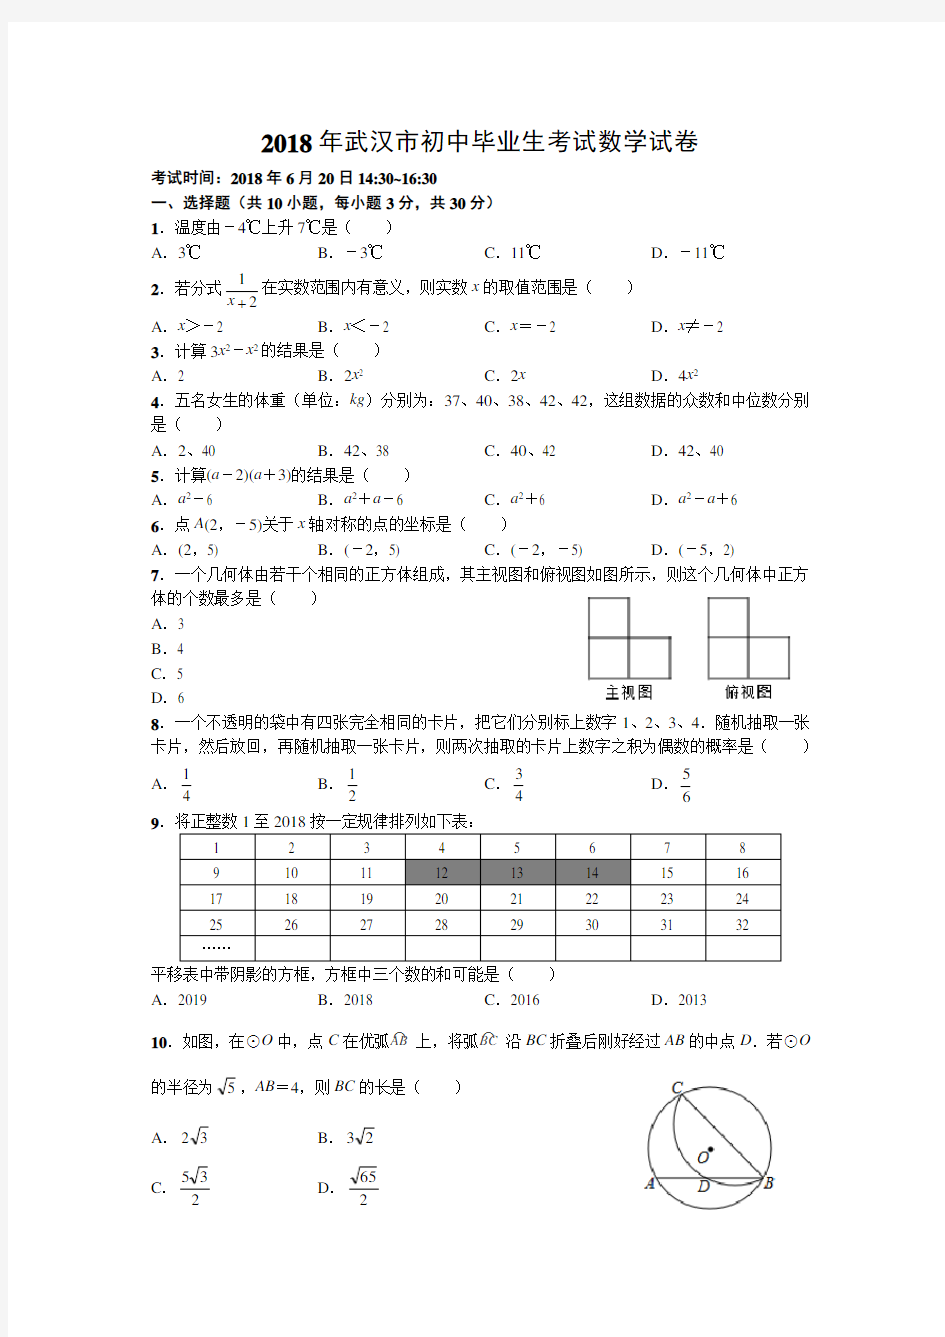 【真题】武汉市2018年初中毕业生考试数学试卷及答案